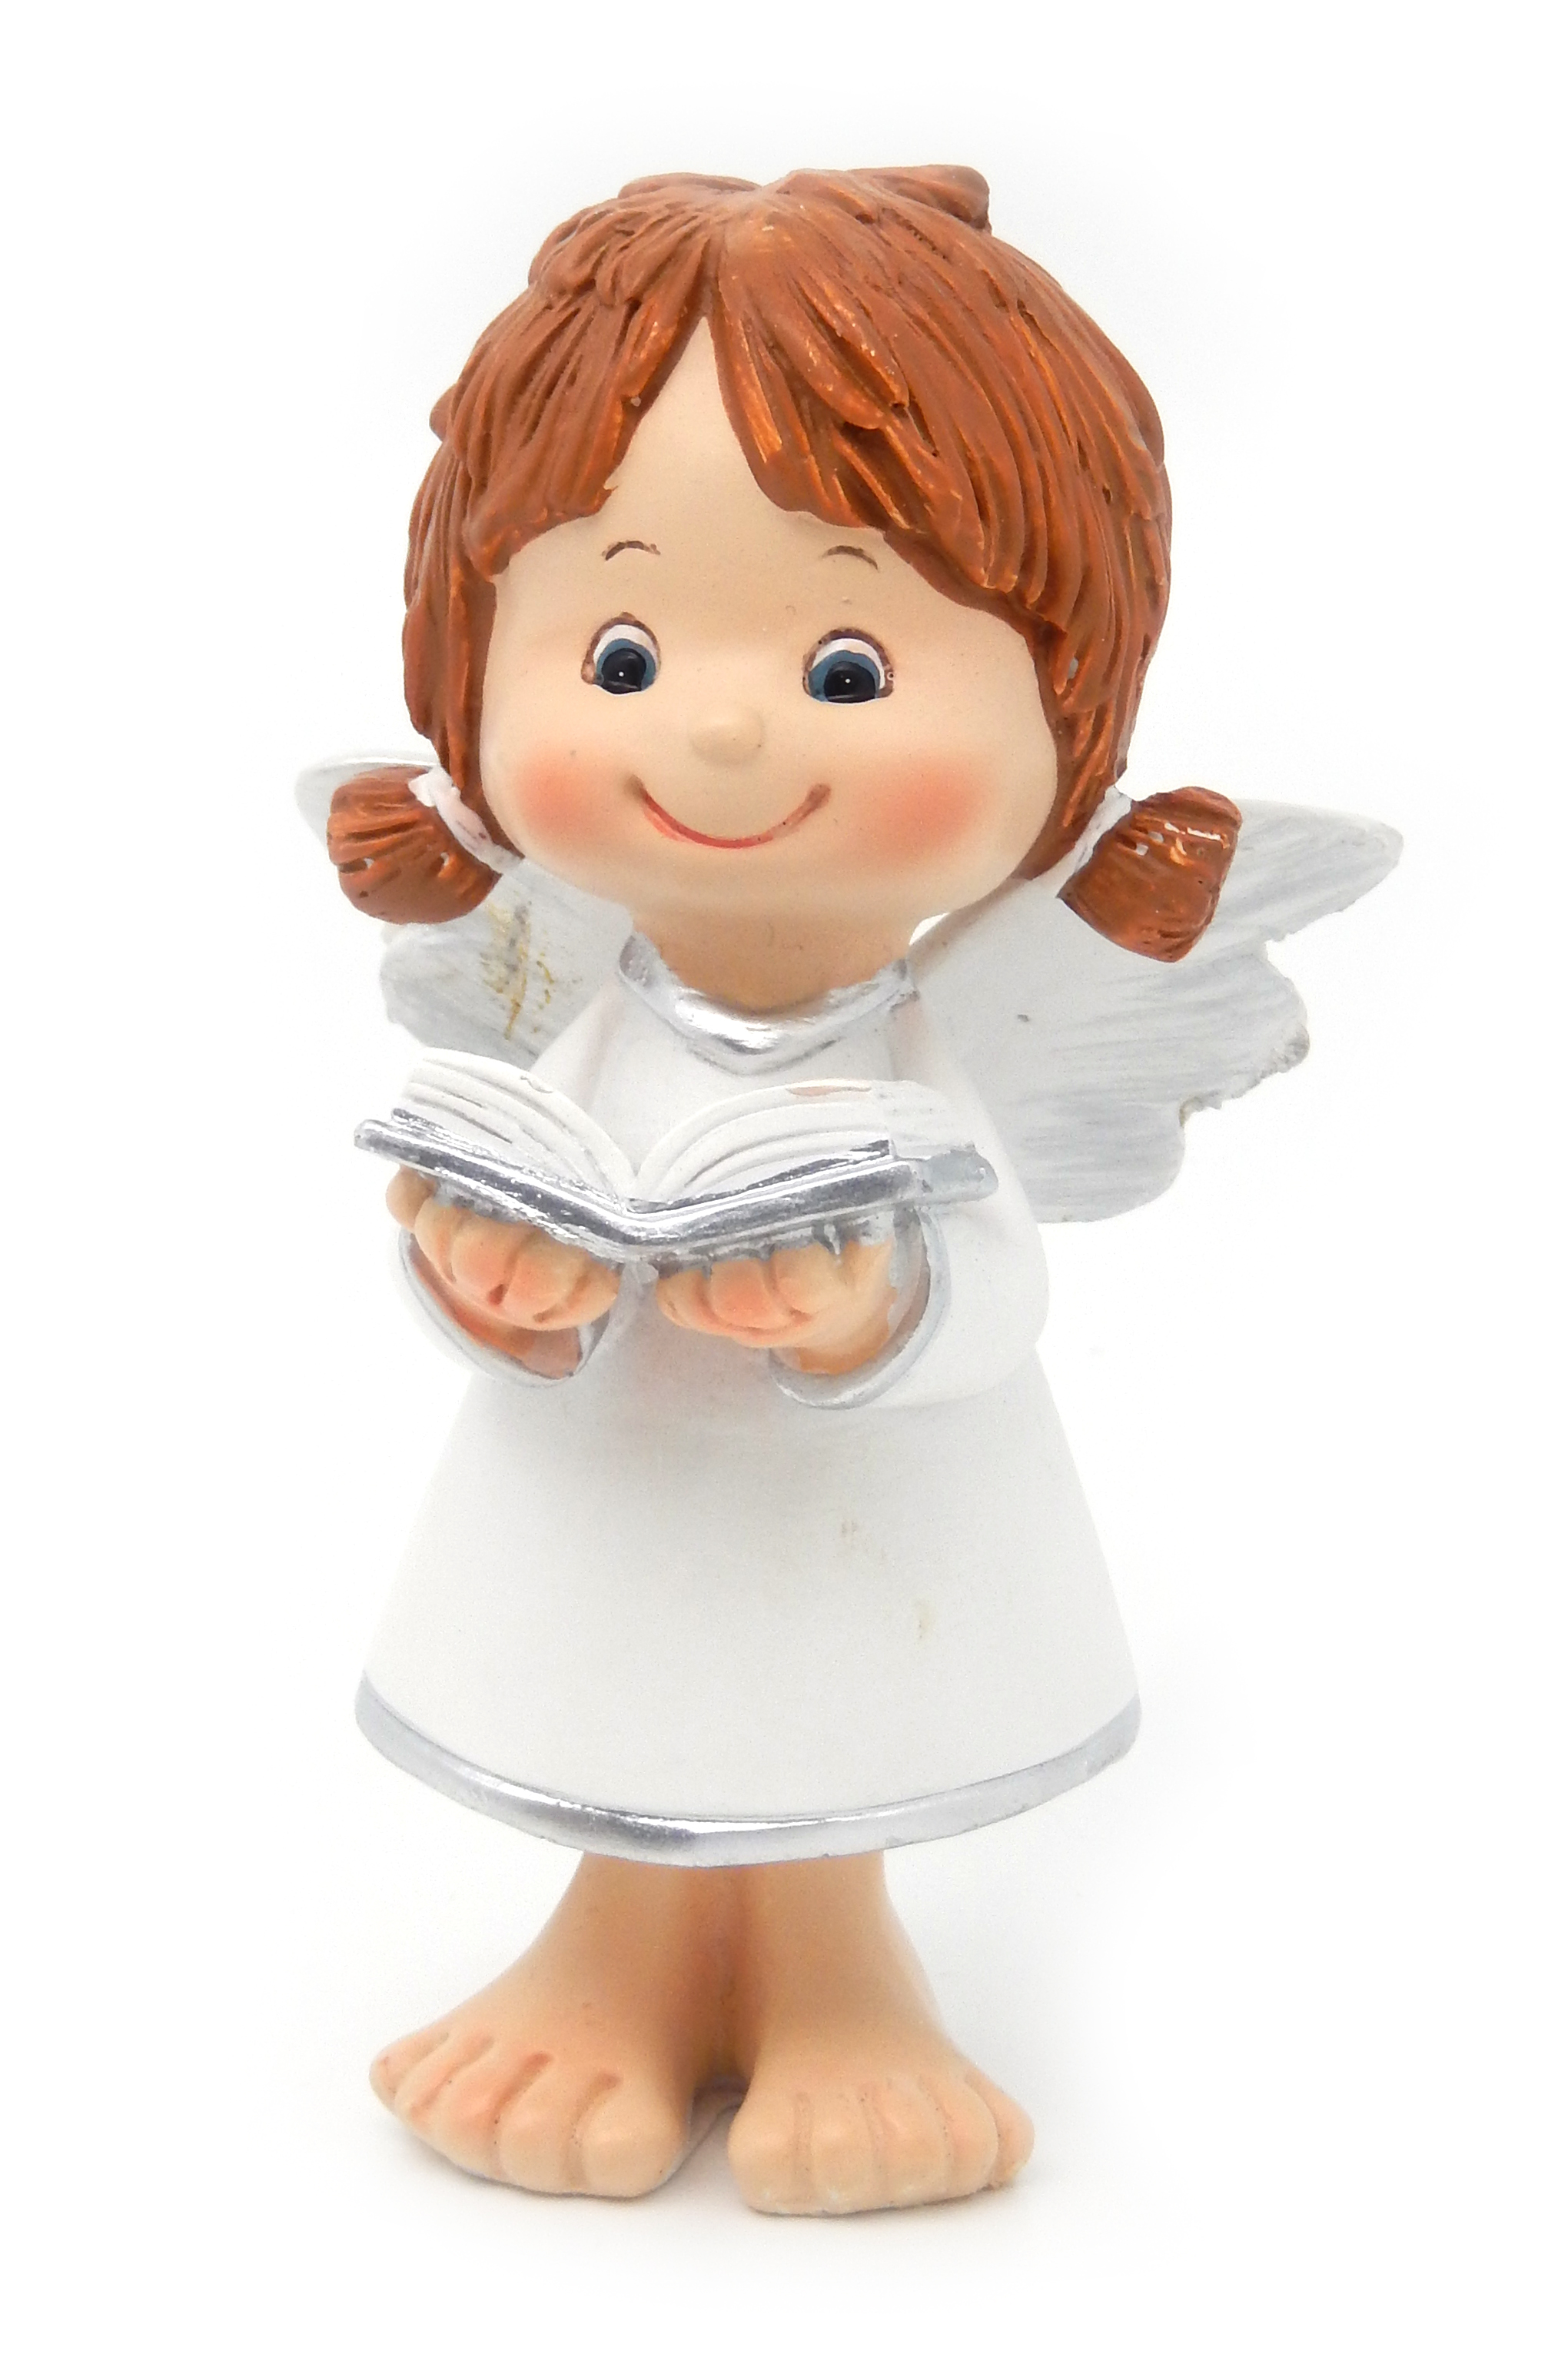 Angel - 12cm - little girl